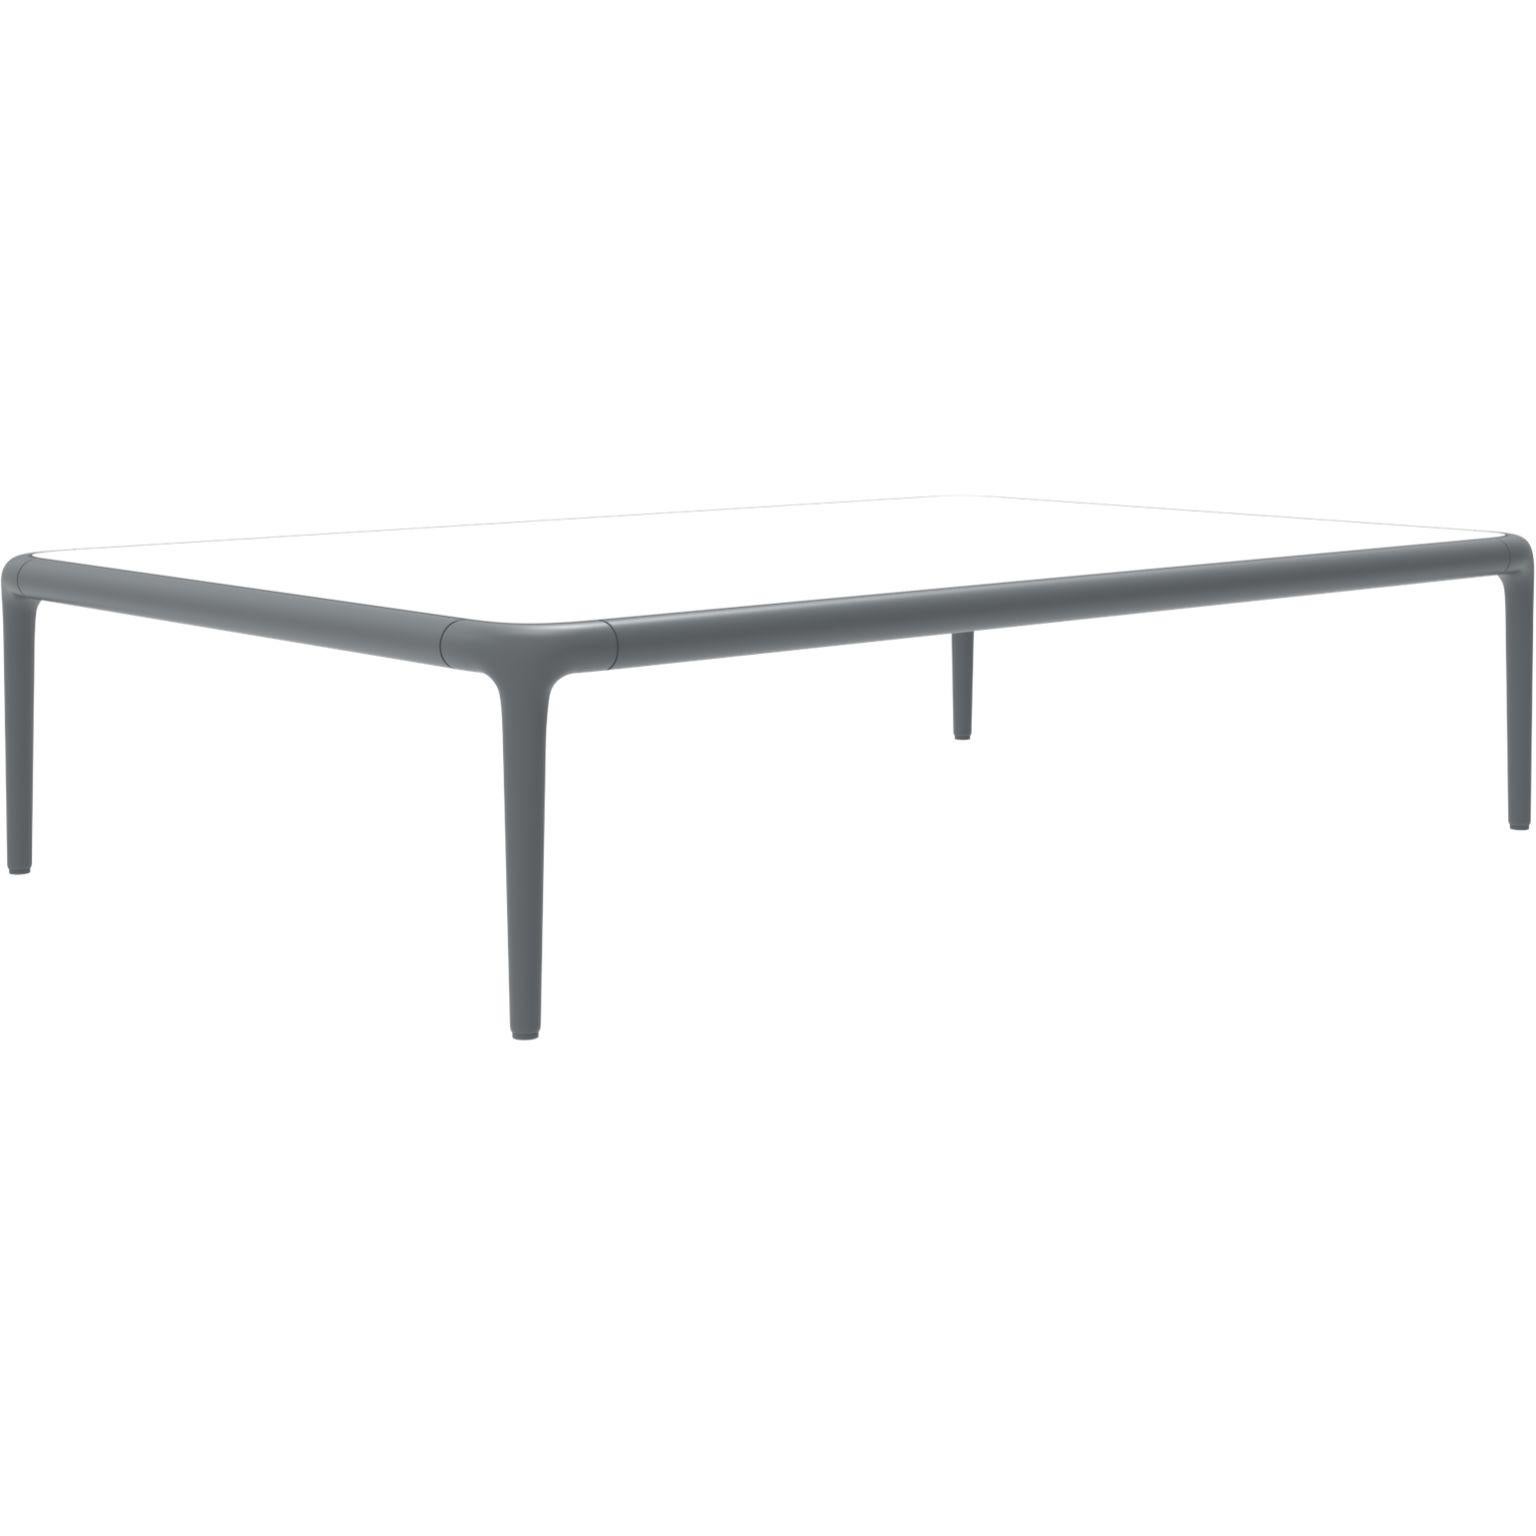 Xaloc table basse grise 120 avec plateau en verre par Mowee.
Dimensions : 120 x 80 x 28 cm : D120 x L80 x H28 cm.
Matériaux : Aluminium, plateau en verre trempé teinté.
Également disponible dans différentes couleurs et finitions d'aluminium (HPL